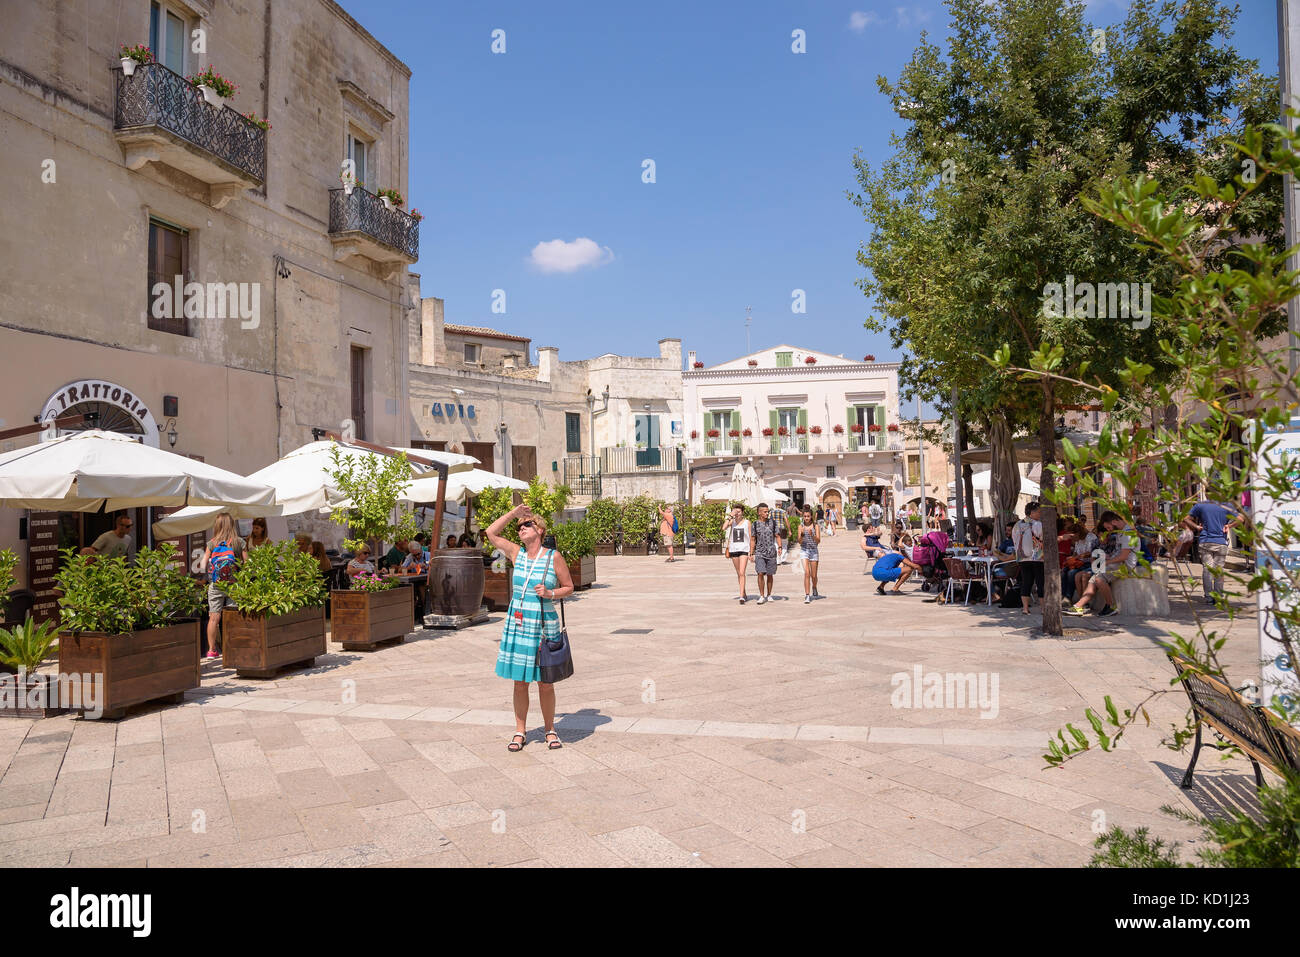 Matera, Italia - 2 settembre 2016: turisti di visitare Piazza del sedile con molti negozi e caffetterie. Foto Stock